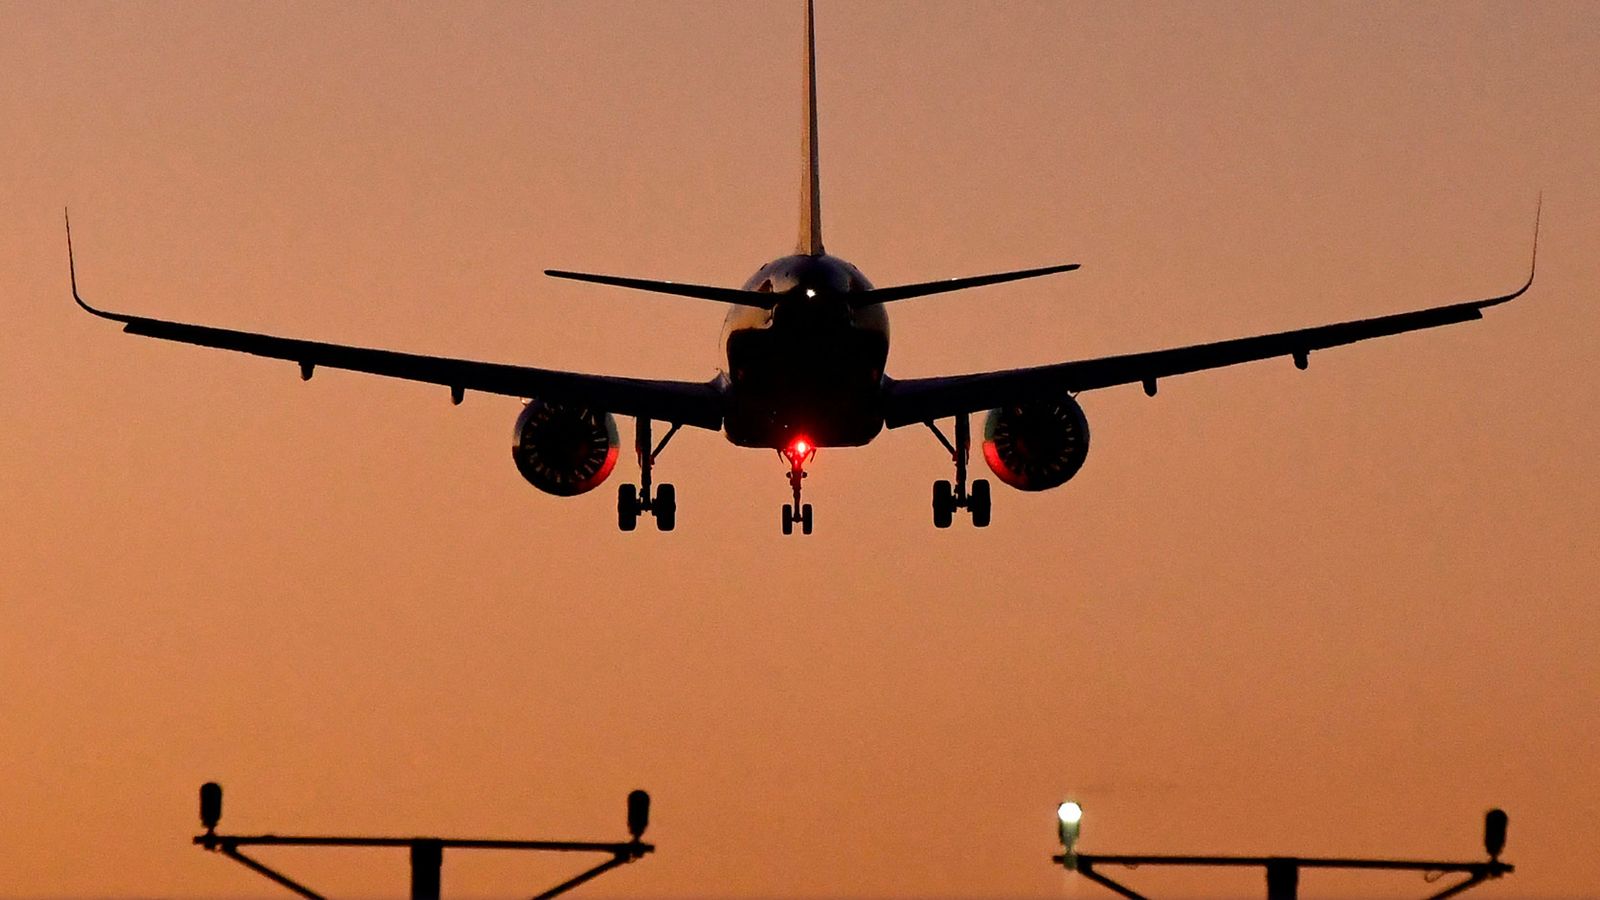 Какая ближнемагистральная авиакомпания попала в число худших задержек в Великобритании в прошлом году?  |  Новости путешествий